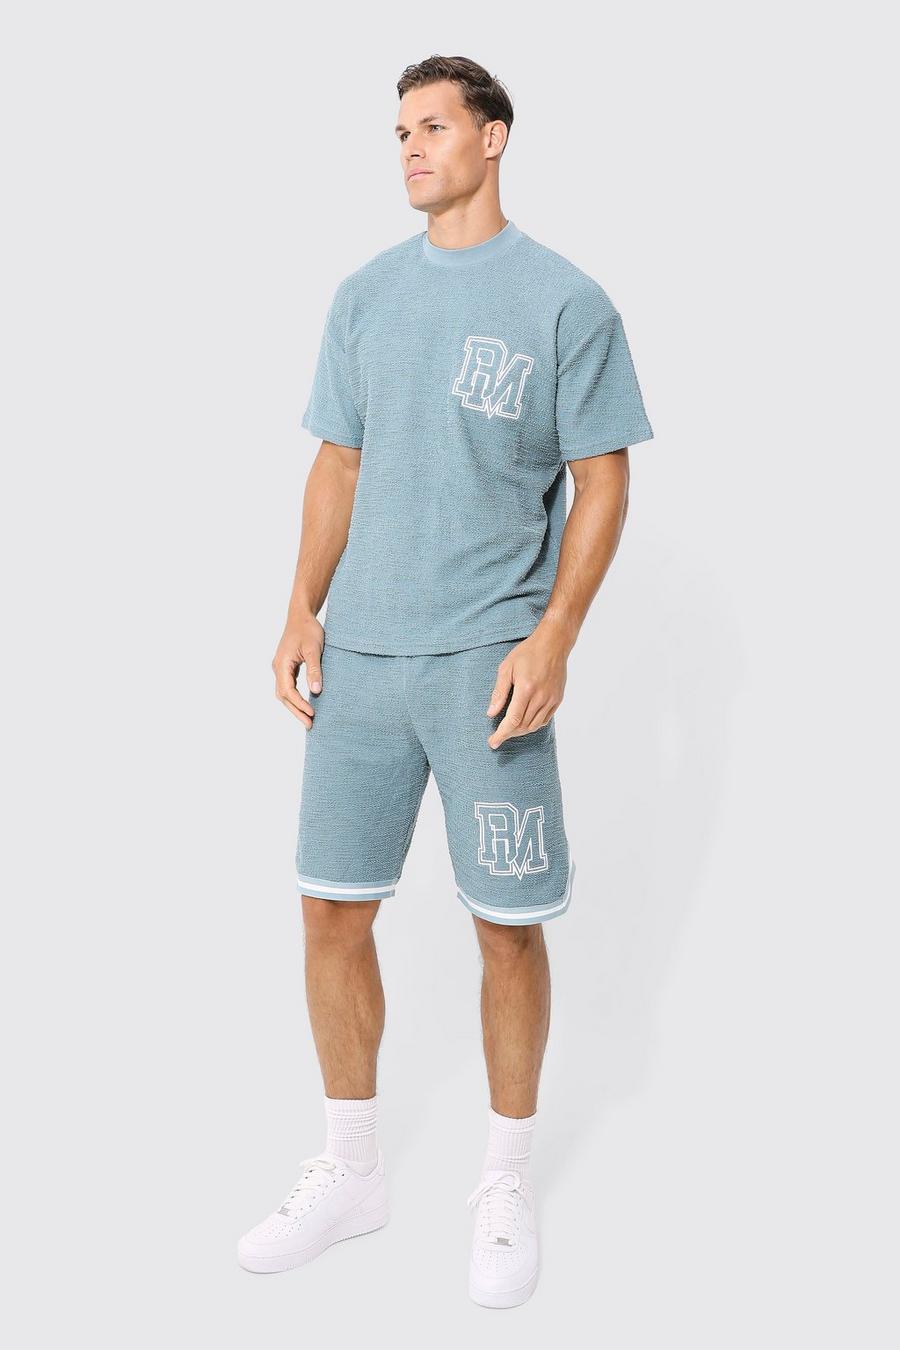 Light blue Tall Oversized Bm Textured T-shirt And Short Set